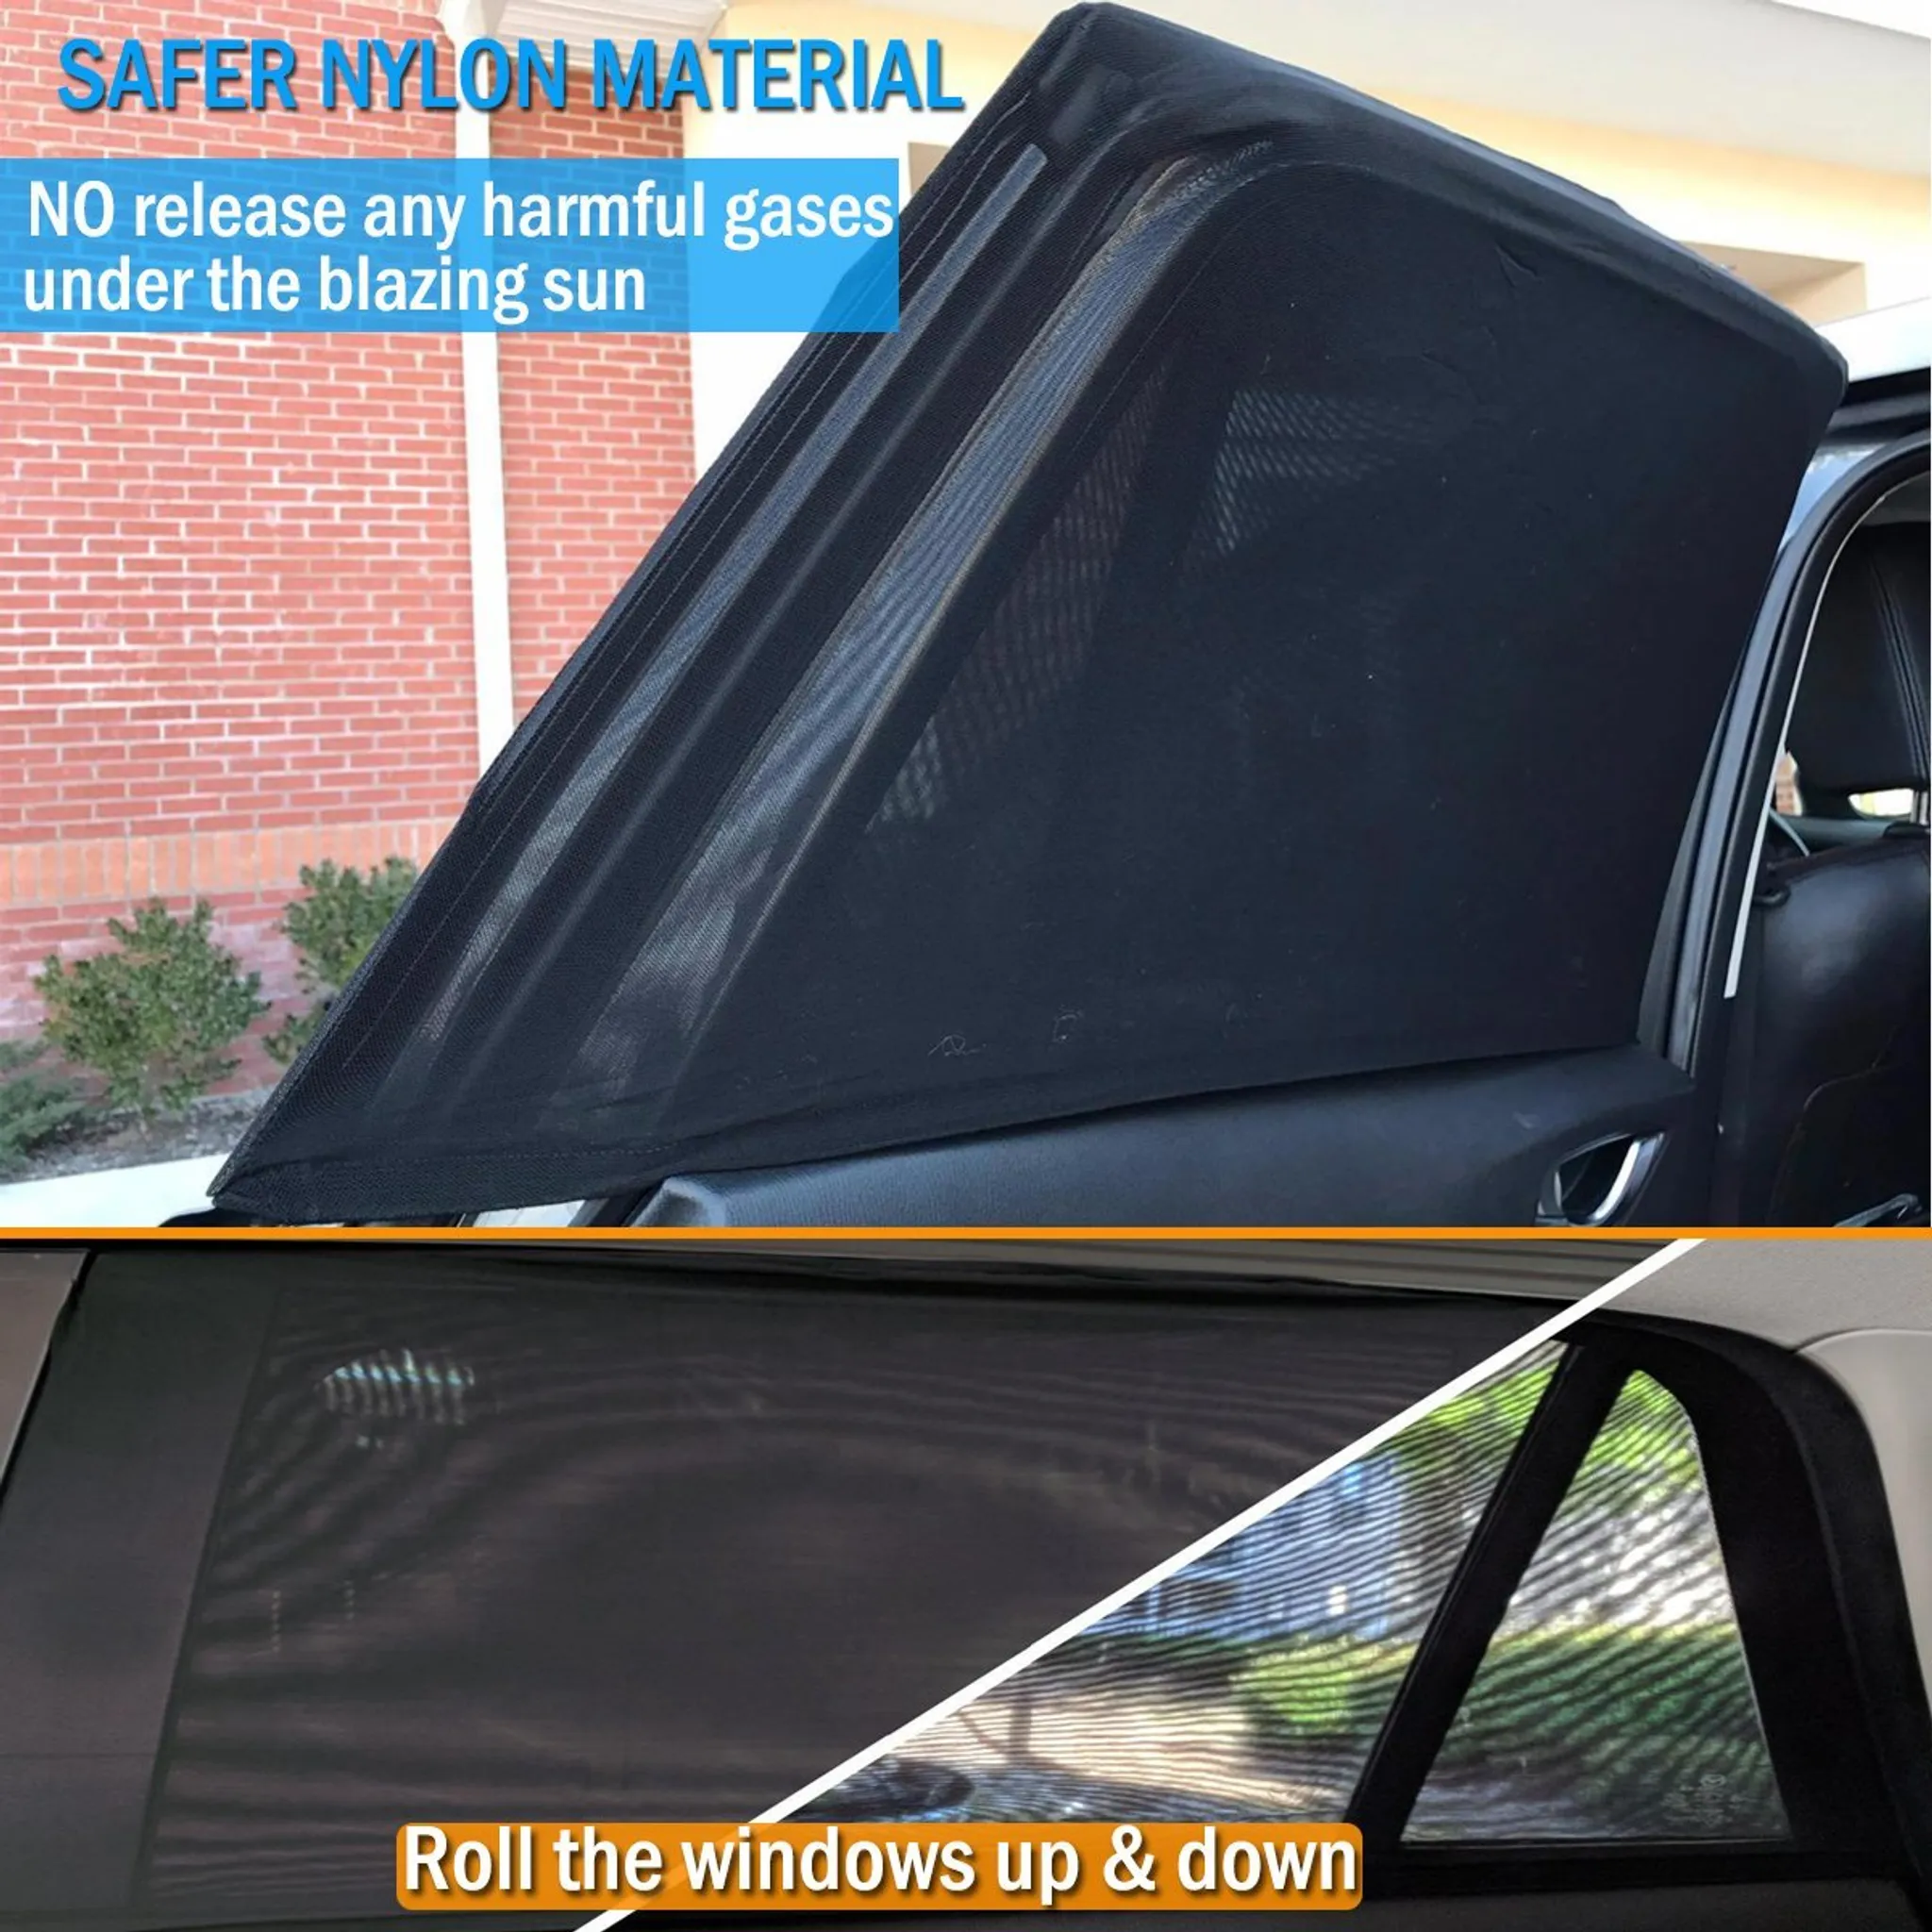 Fliegenschutz Fliegengitter für Auto Autofenster – 2 Stück Netz